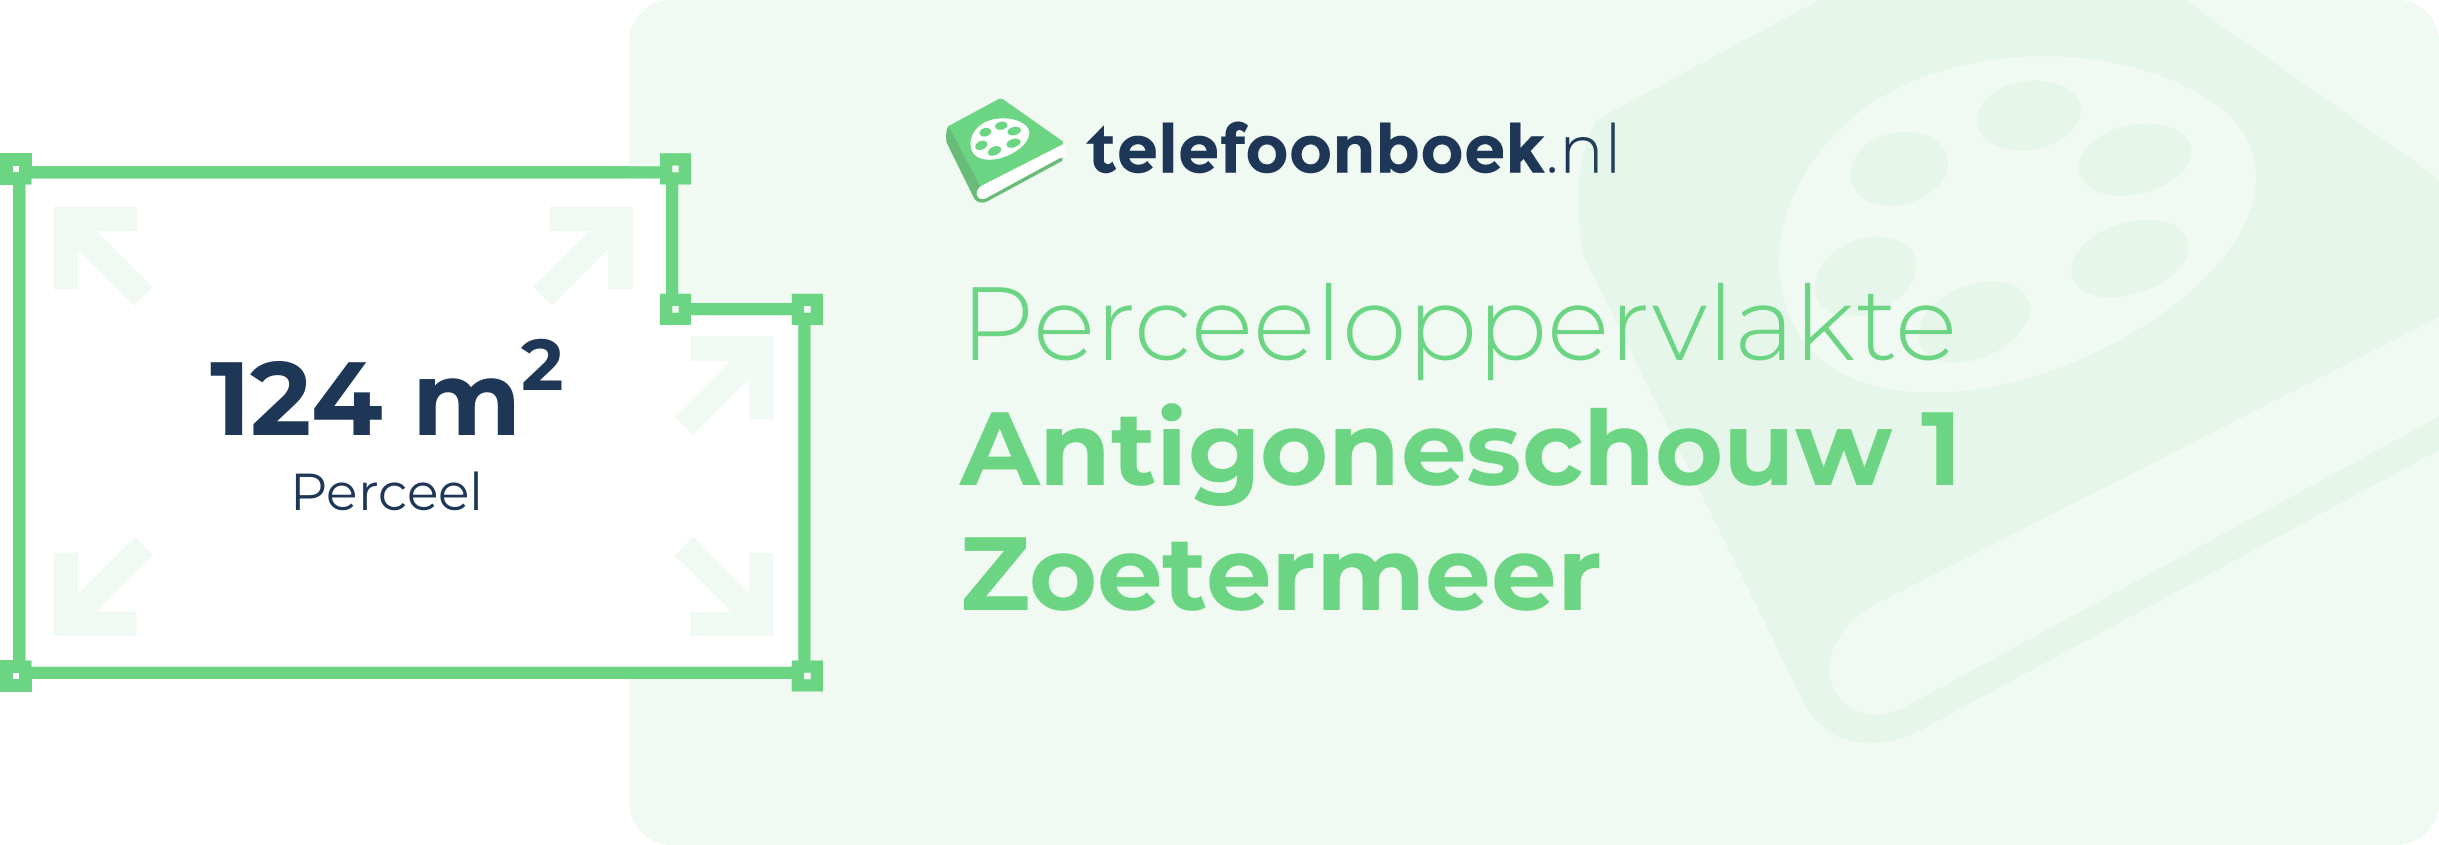 Perceeloppervlakte Antigoneschouw 1 Zoetermeer